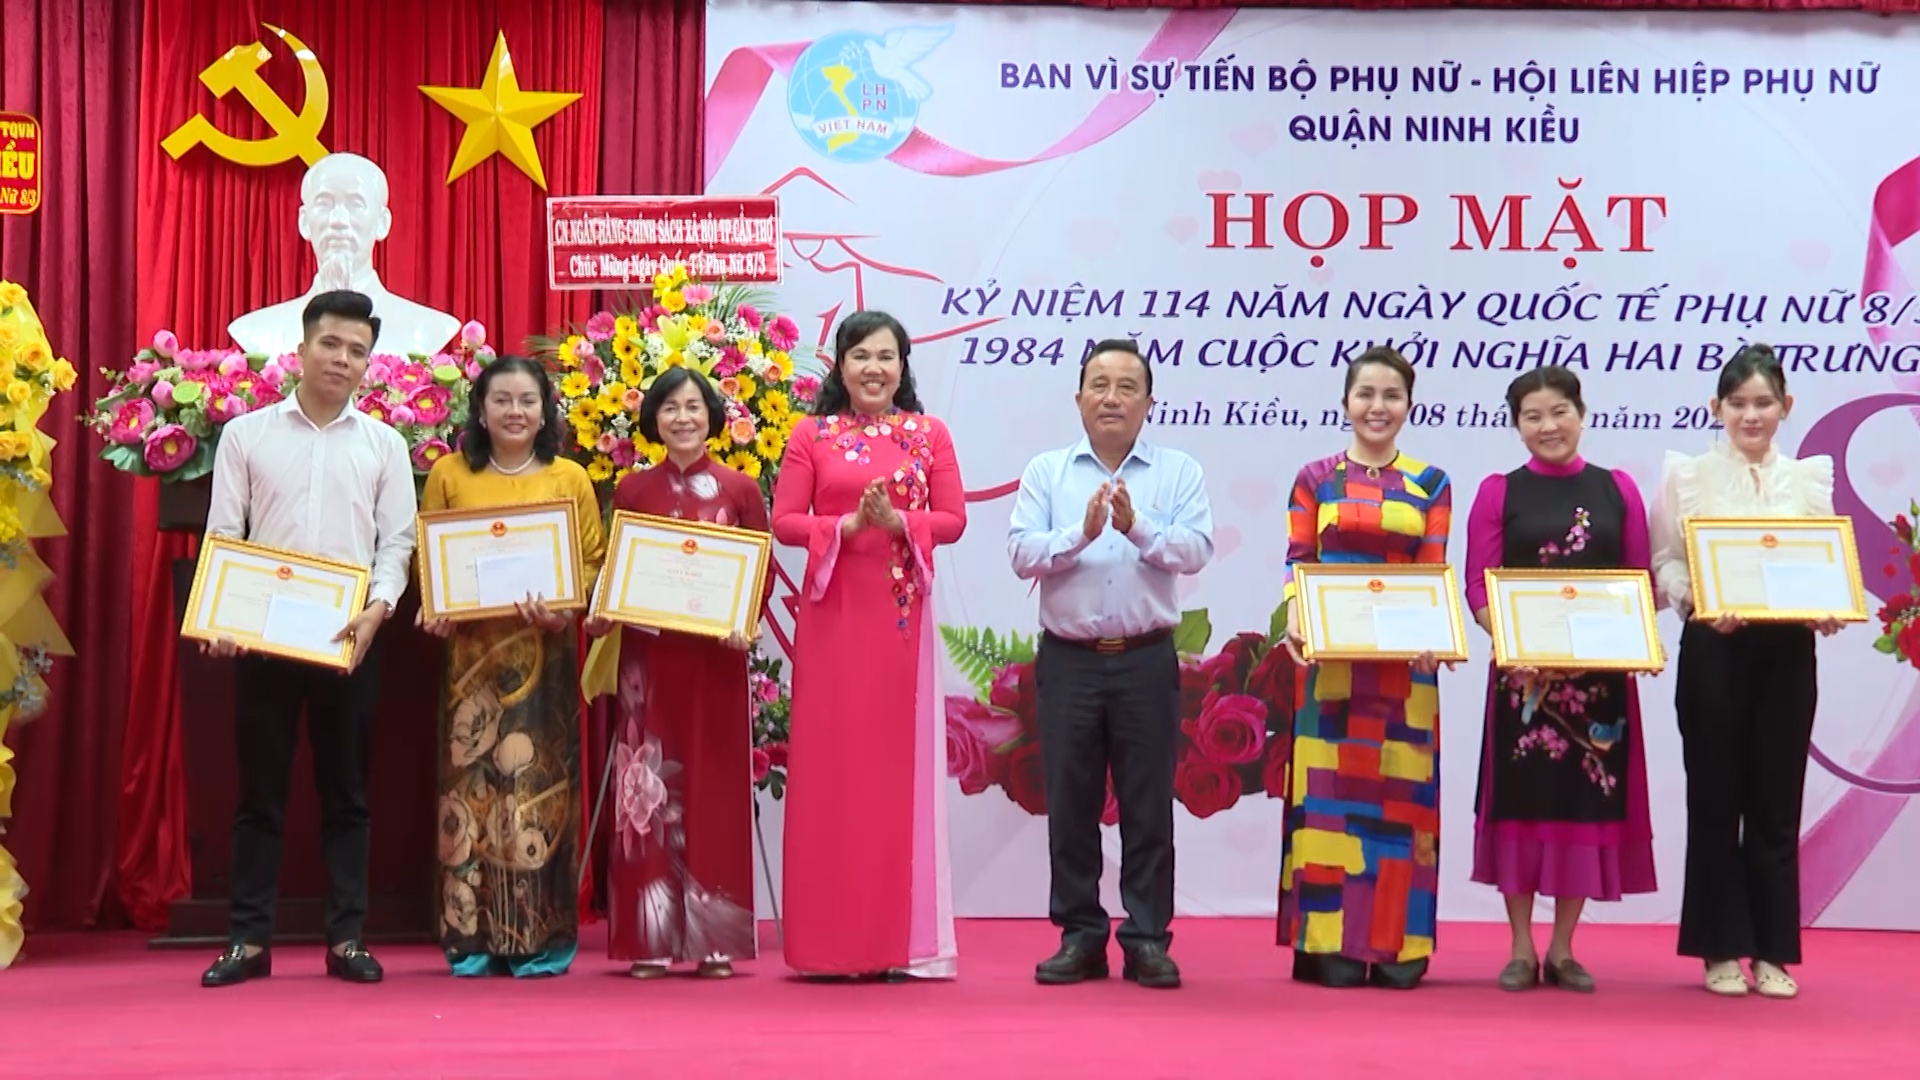 Hình 4: Dịp này, lãnh đạo quận Ninh Kiều đã trao tặng giấy khen cho các tập thể, cá nhân tiêu biểu có nhiều đóng góp Vì sự tiến bộ phụ nữ quận trong năm qua